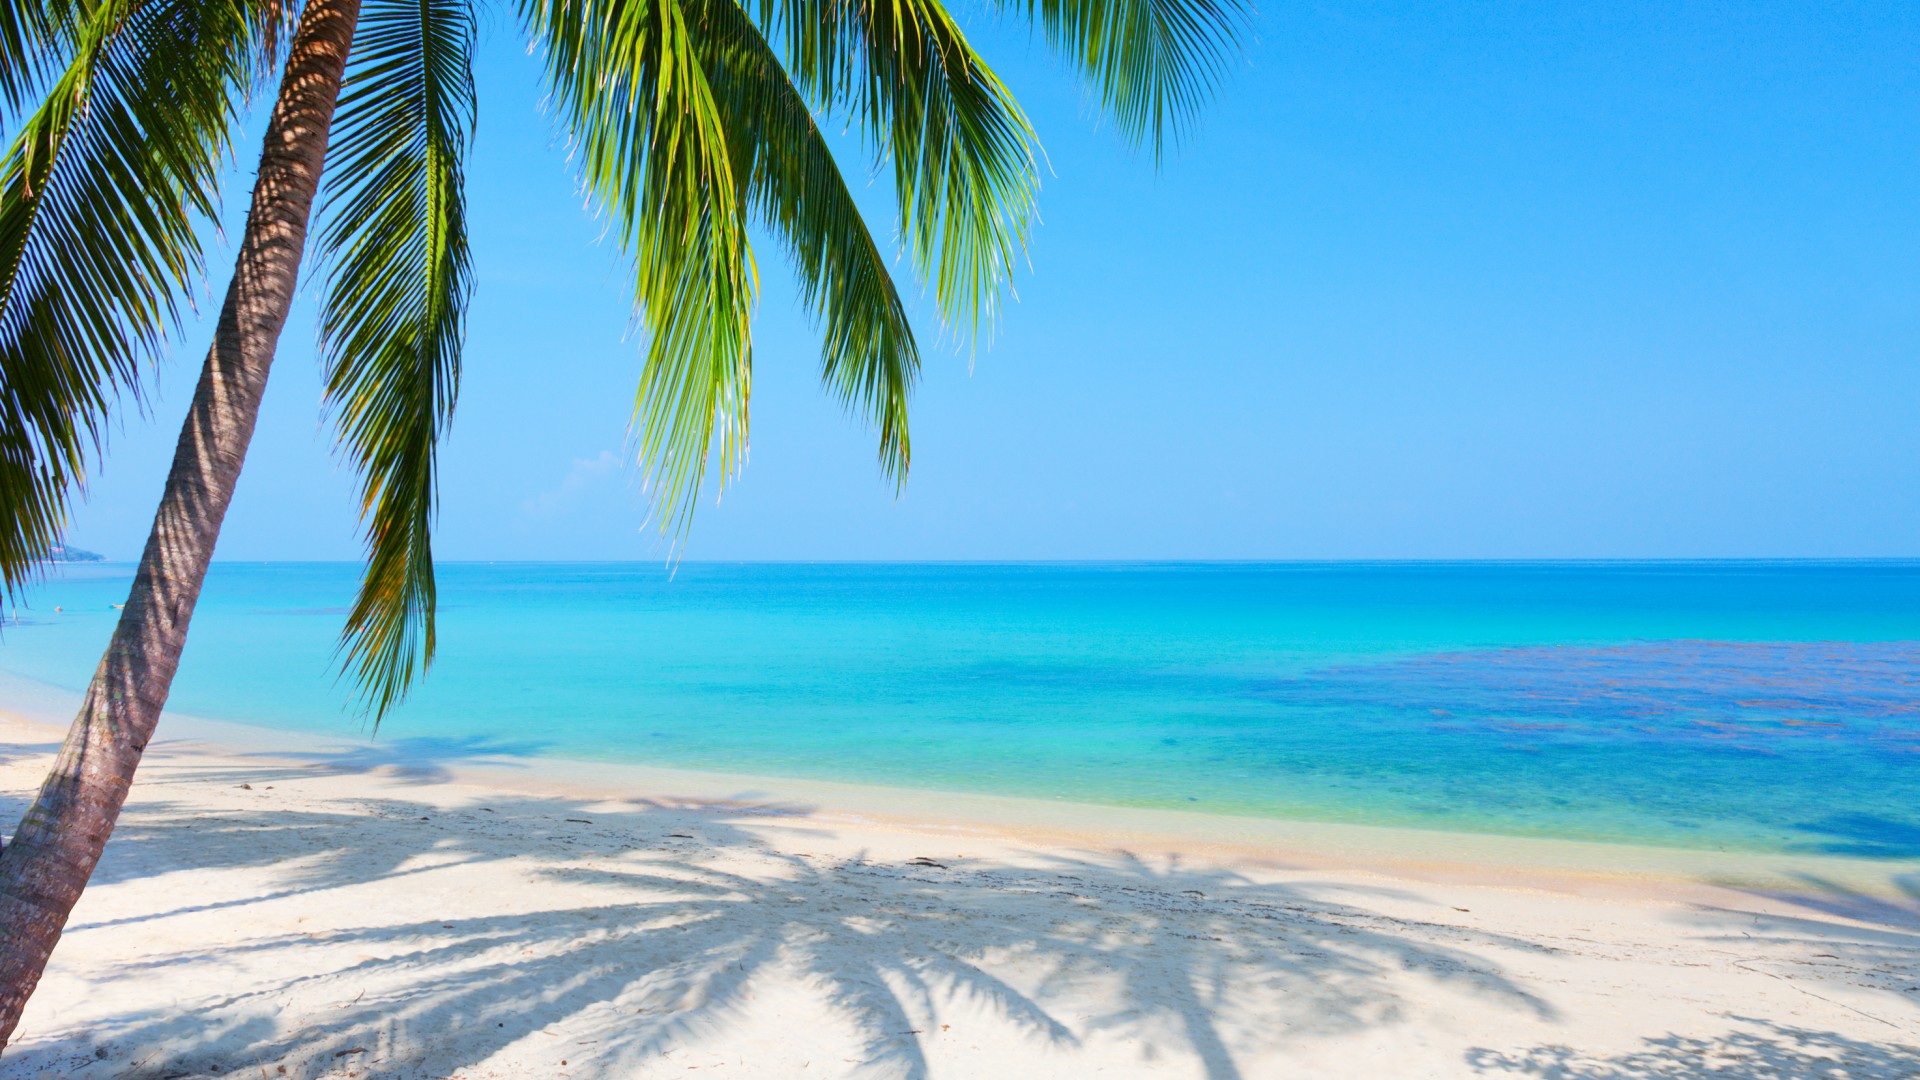 蓝色大海,天空,棕榈树,海滩风景桌面壁纸